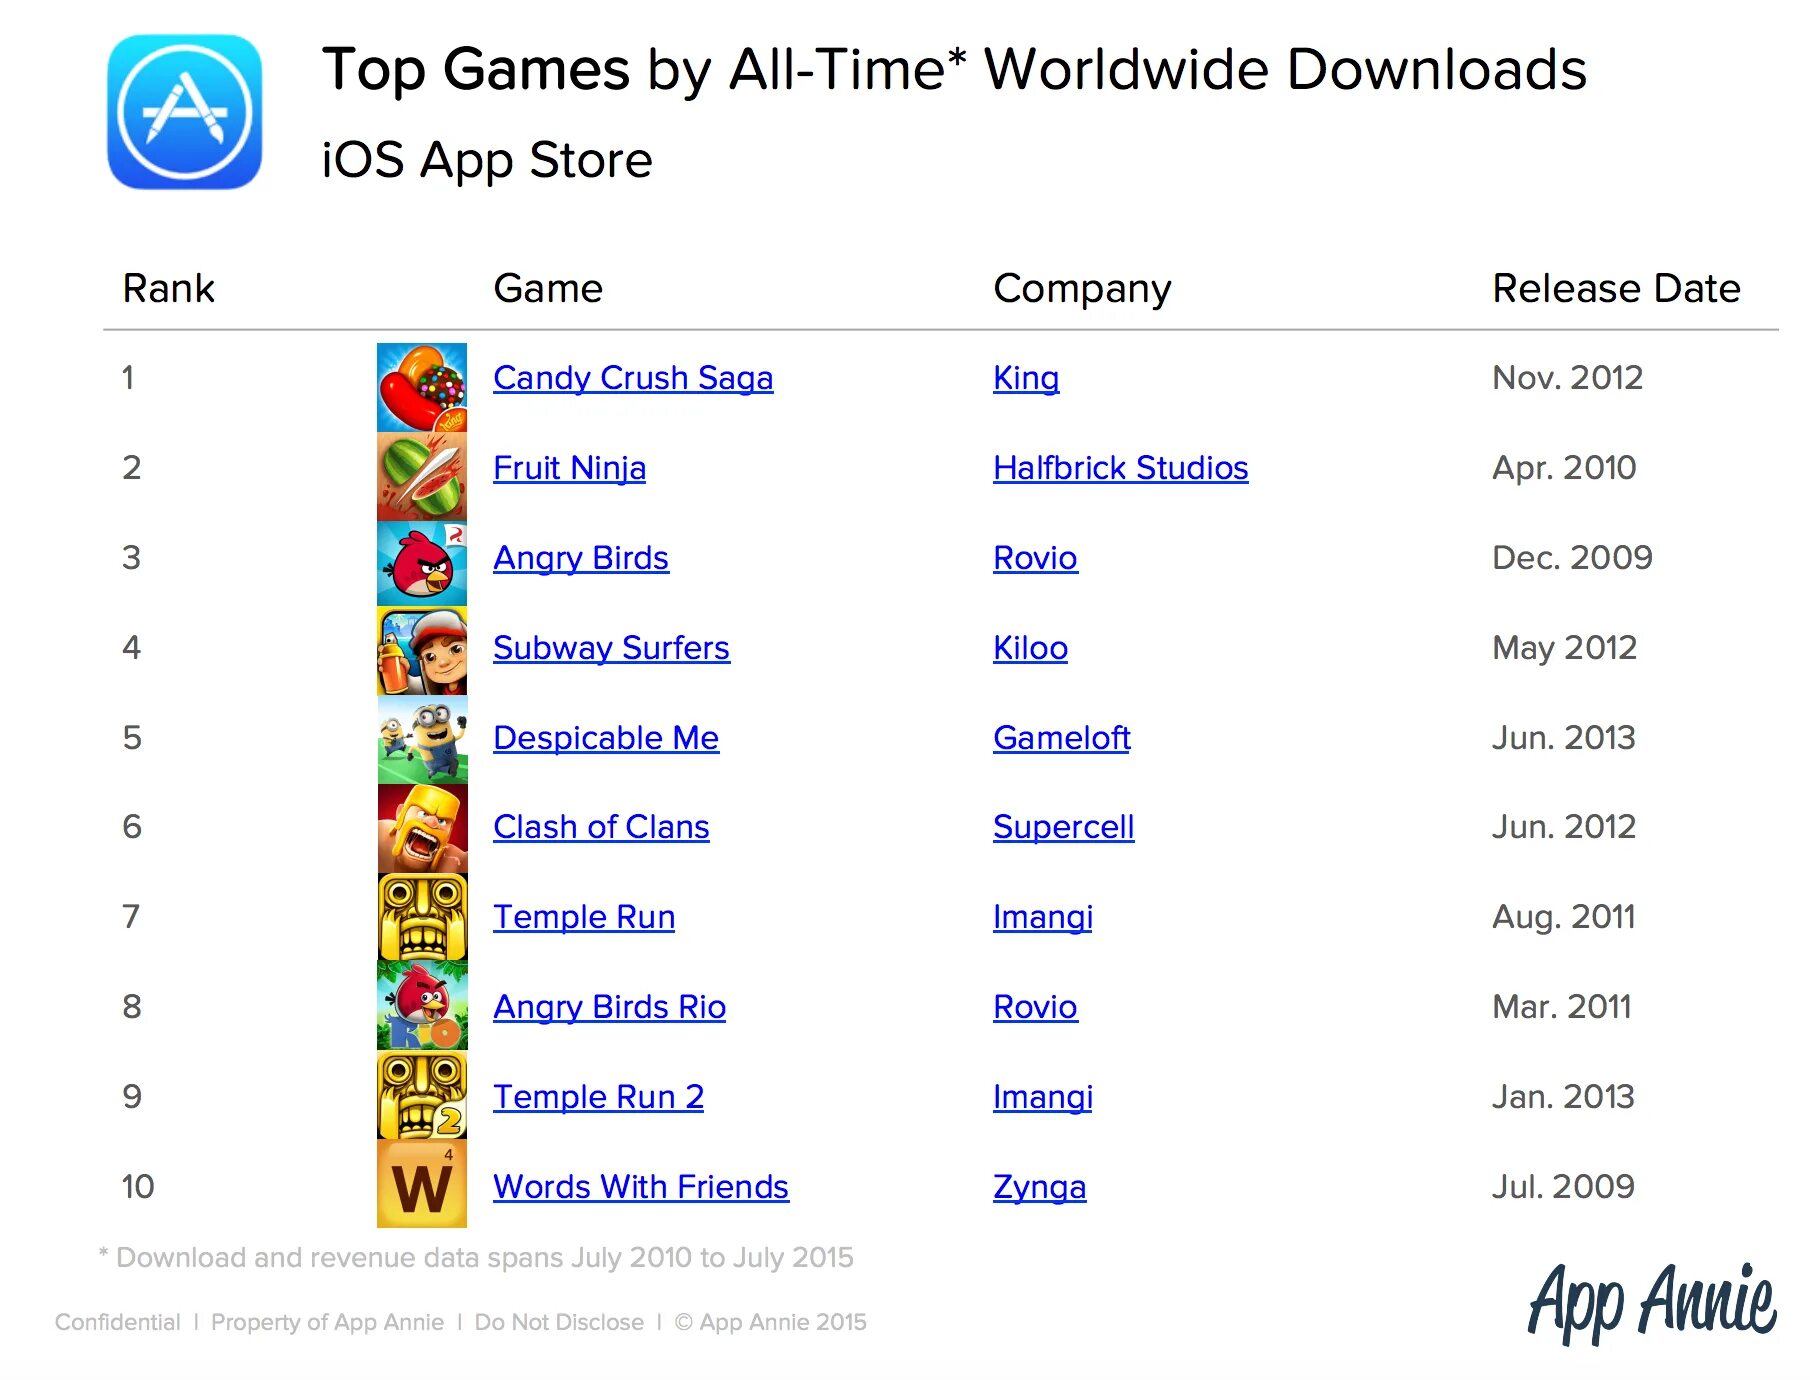 Список самых популярных игр. Популярные игры список. Список самых популярных мобильных игр. Какая игра на 1 месте. Список игр всех времен